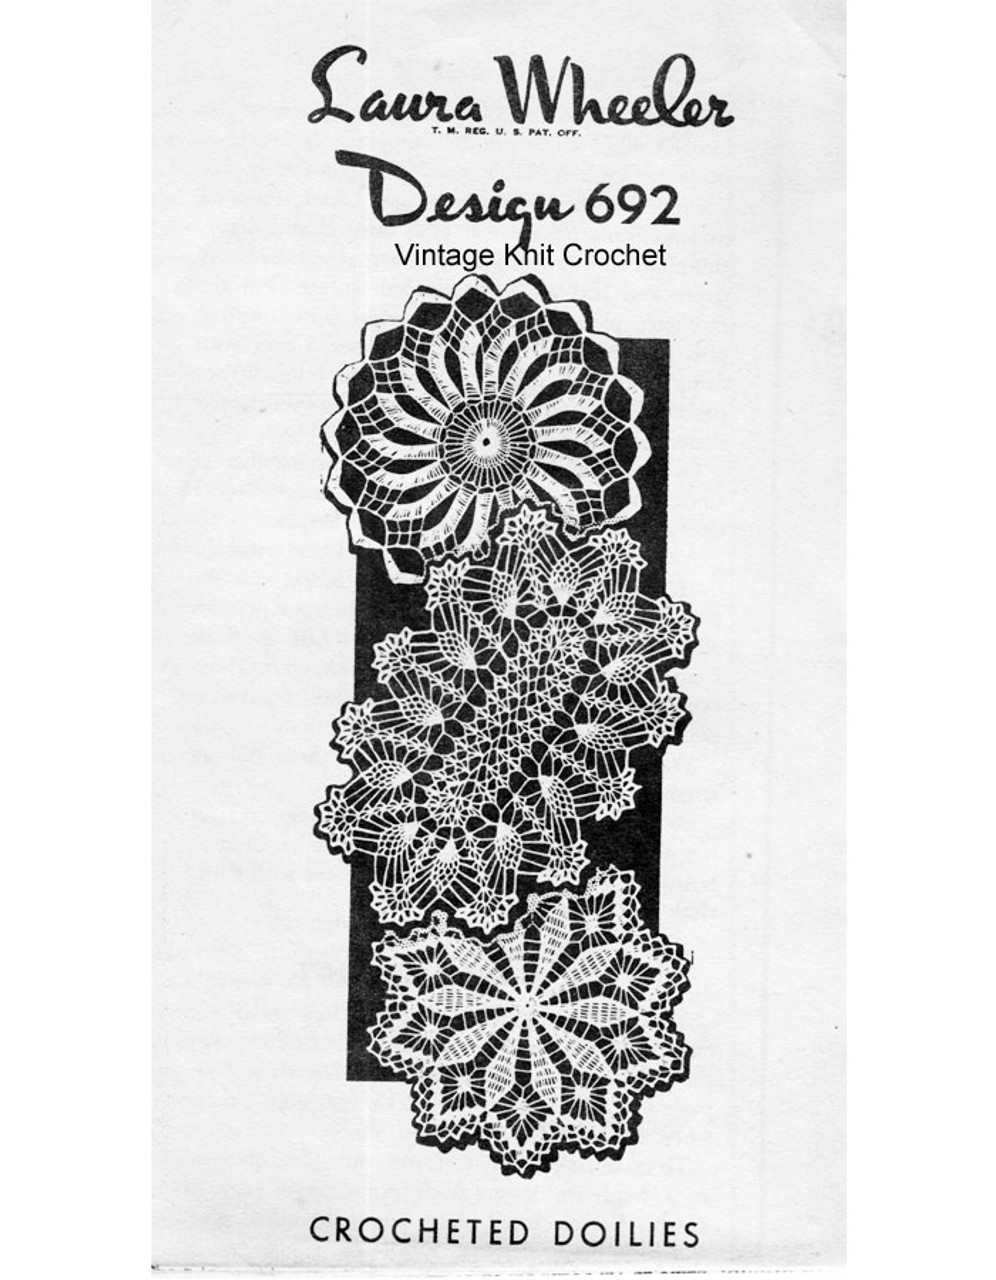 Crochet pinwheel flower doilies pattern laura wheeler 692